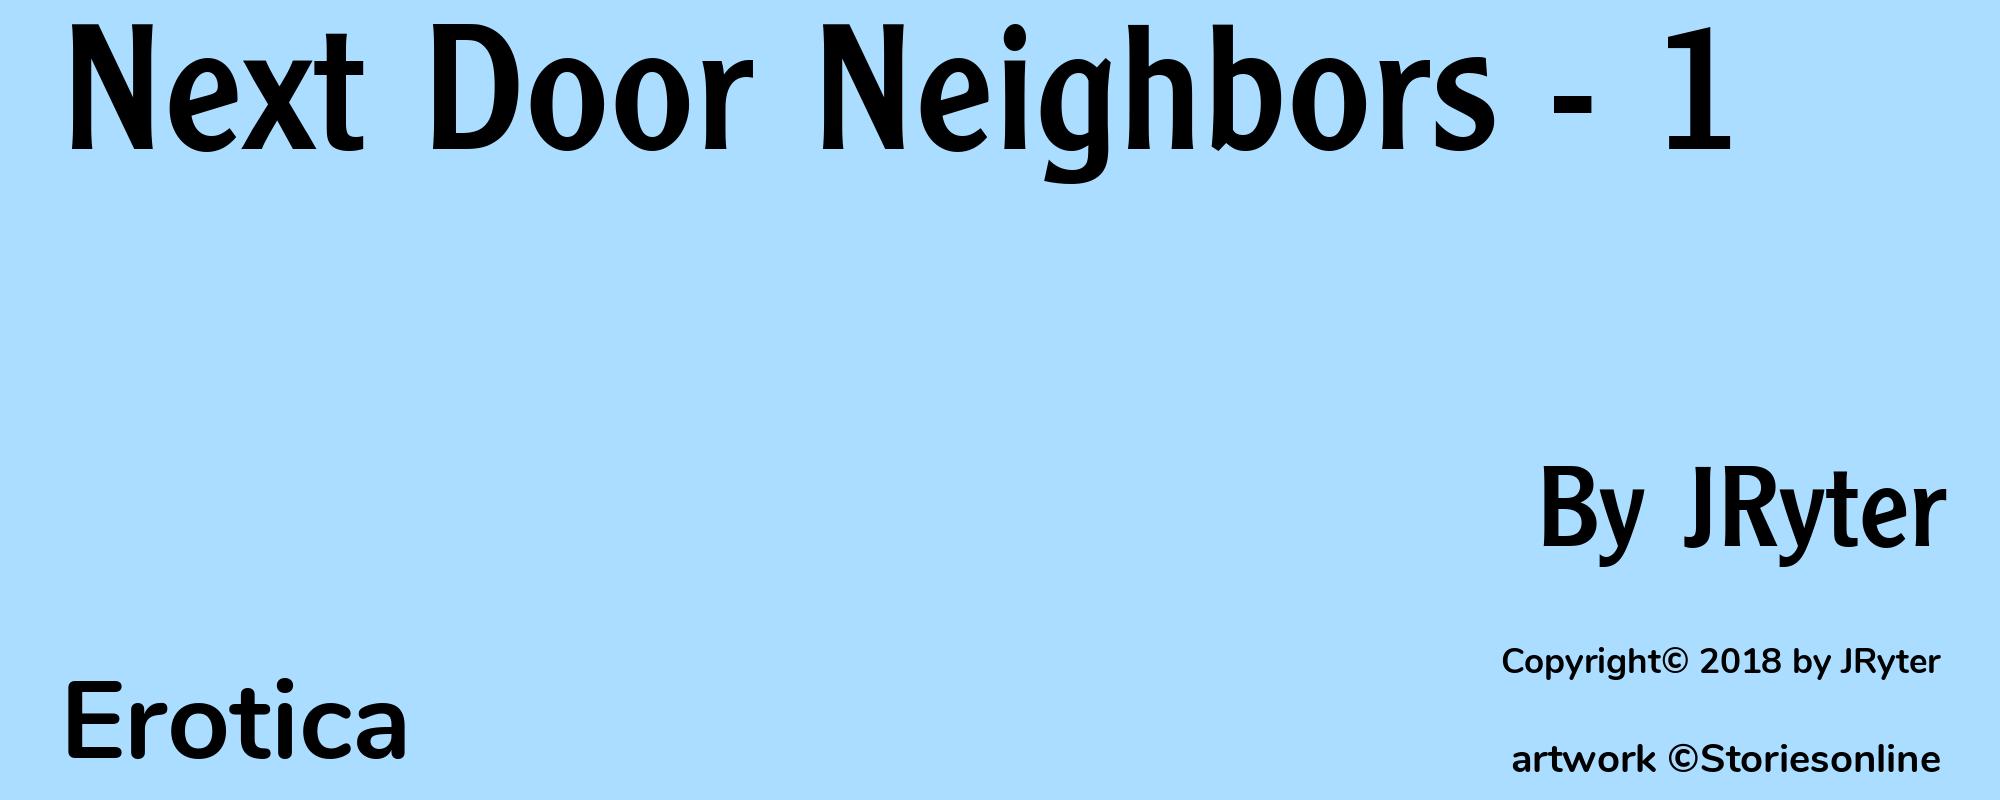 Next Door Neighbors - 1 - Cover